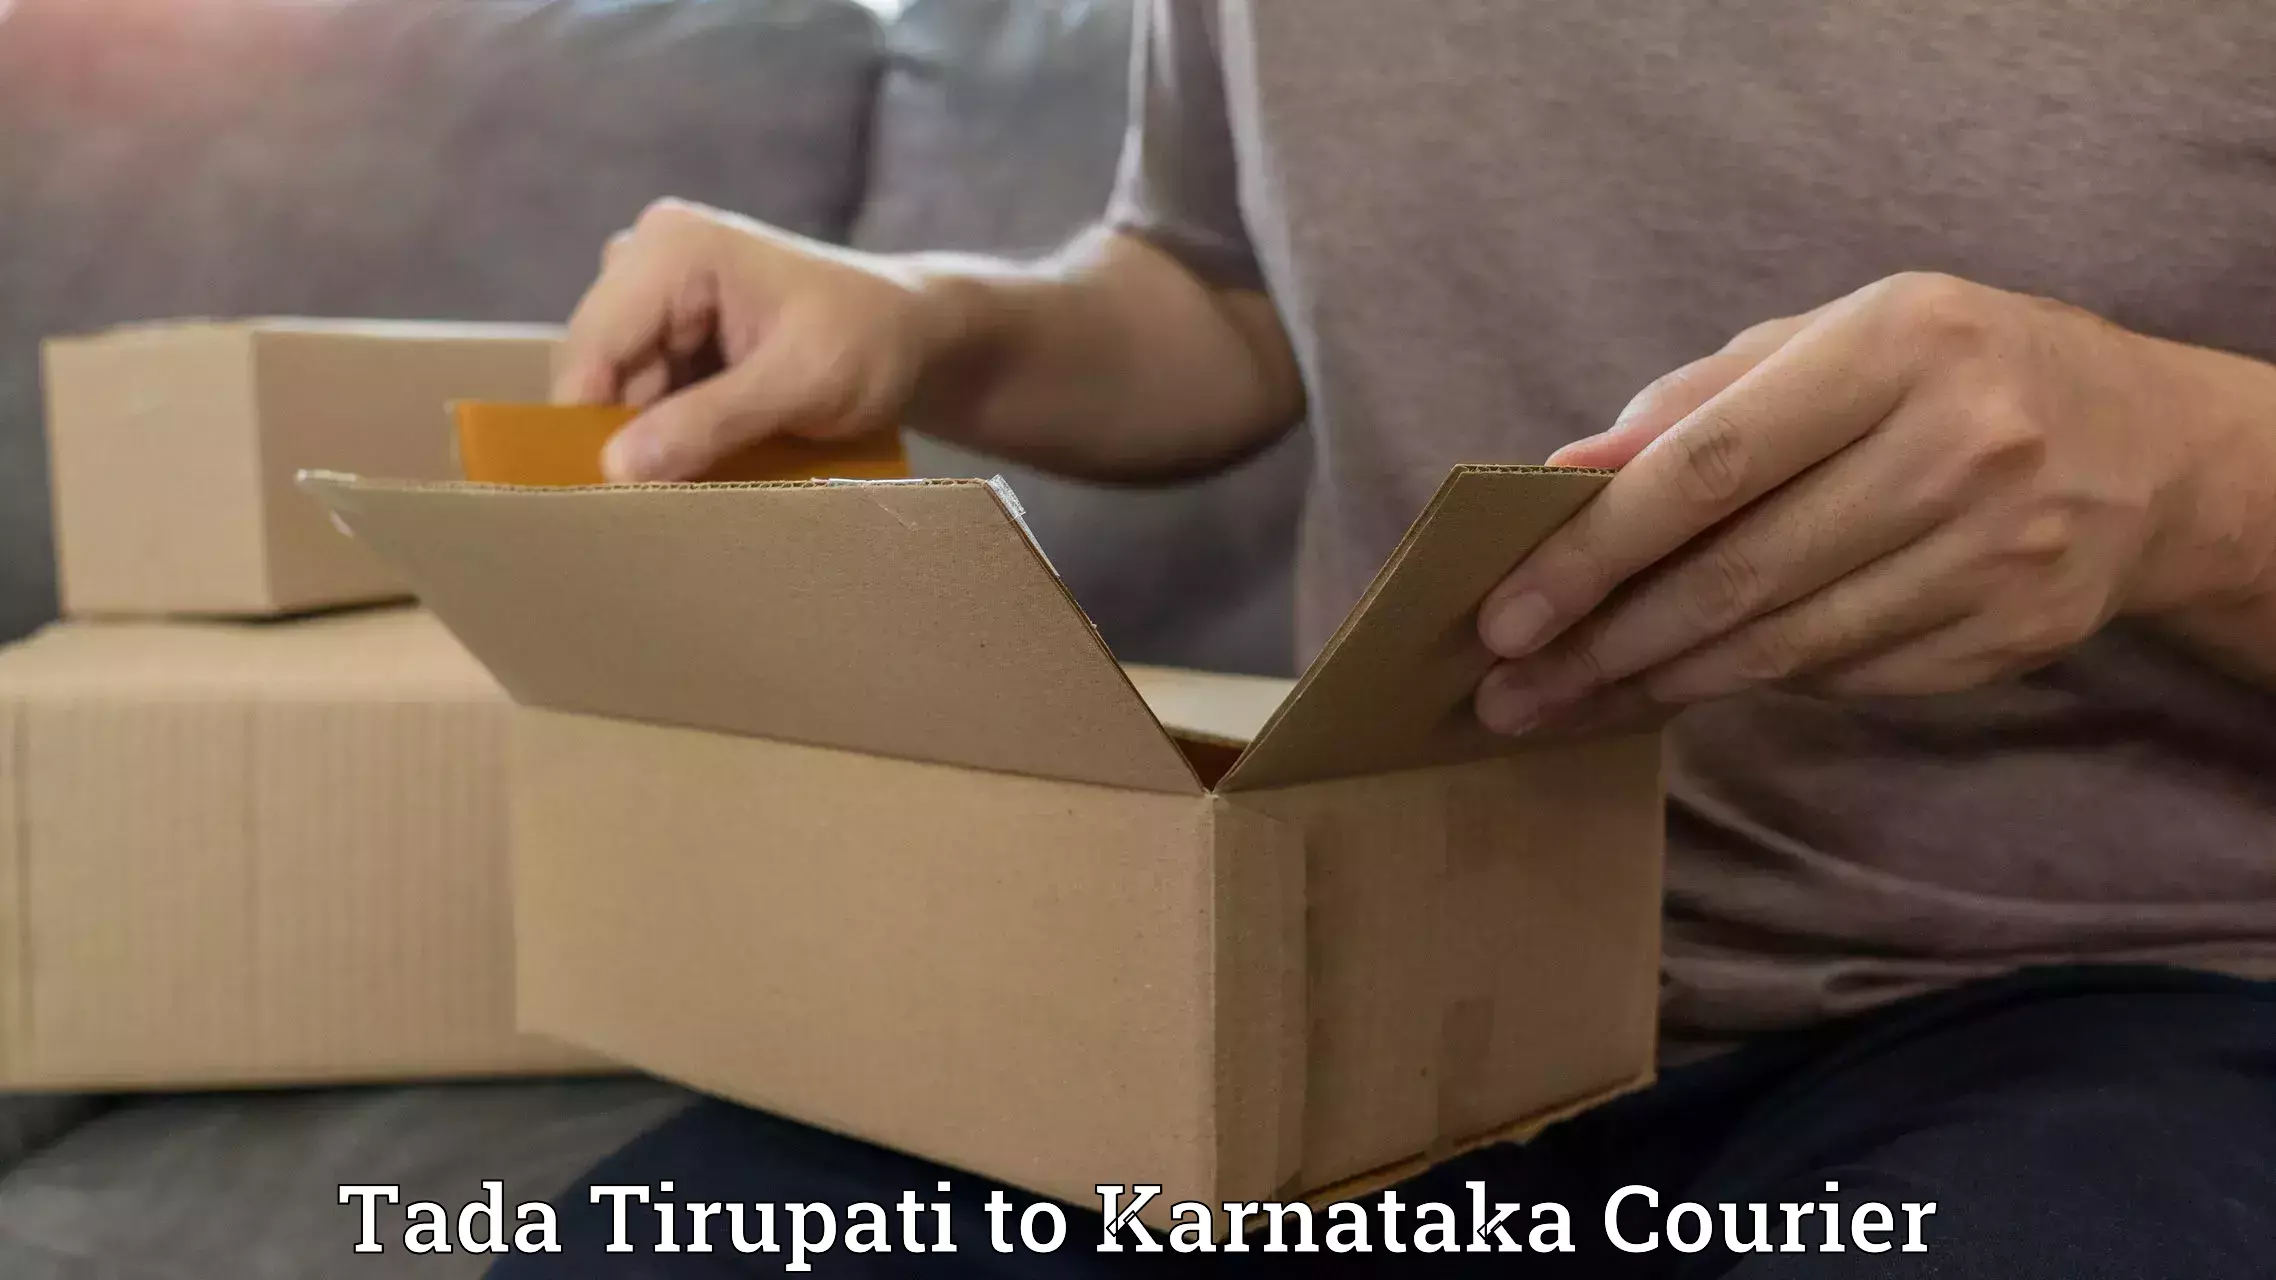 Cargo delivery service Tada Tirupati to Yellare